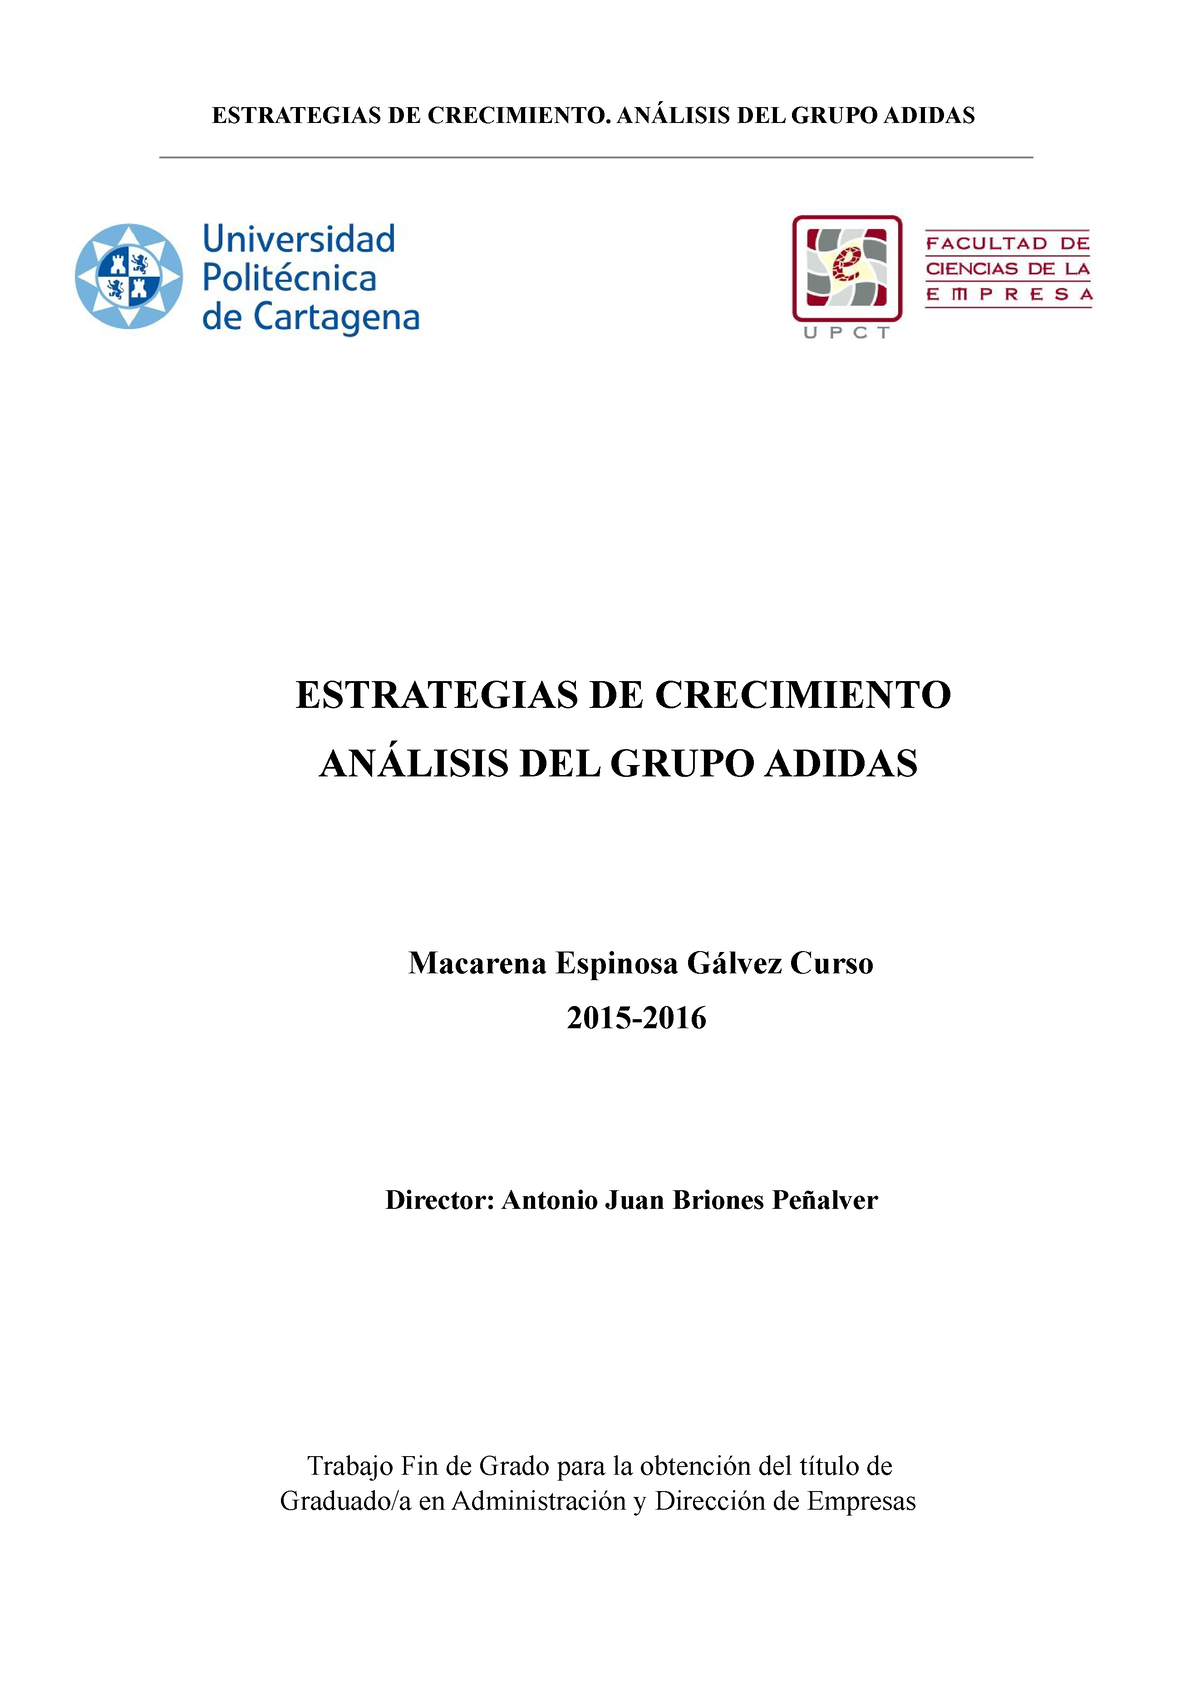 Adidas Documento - Logística - ESTRATEGIAS DE CRECIMIENTO ANÁLISIS GRUPO ADIDAS Macarena - Studocu